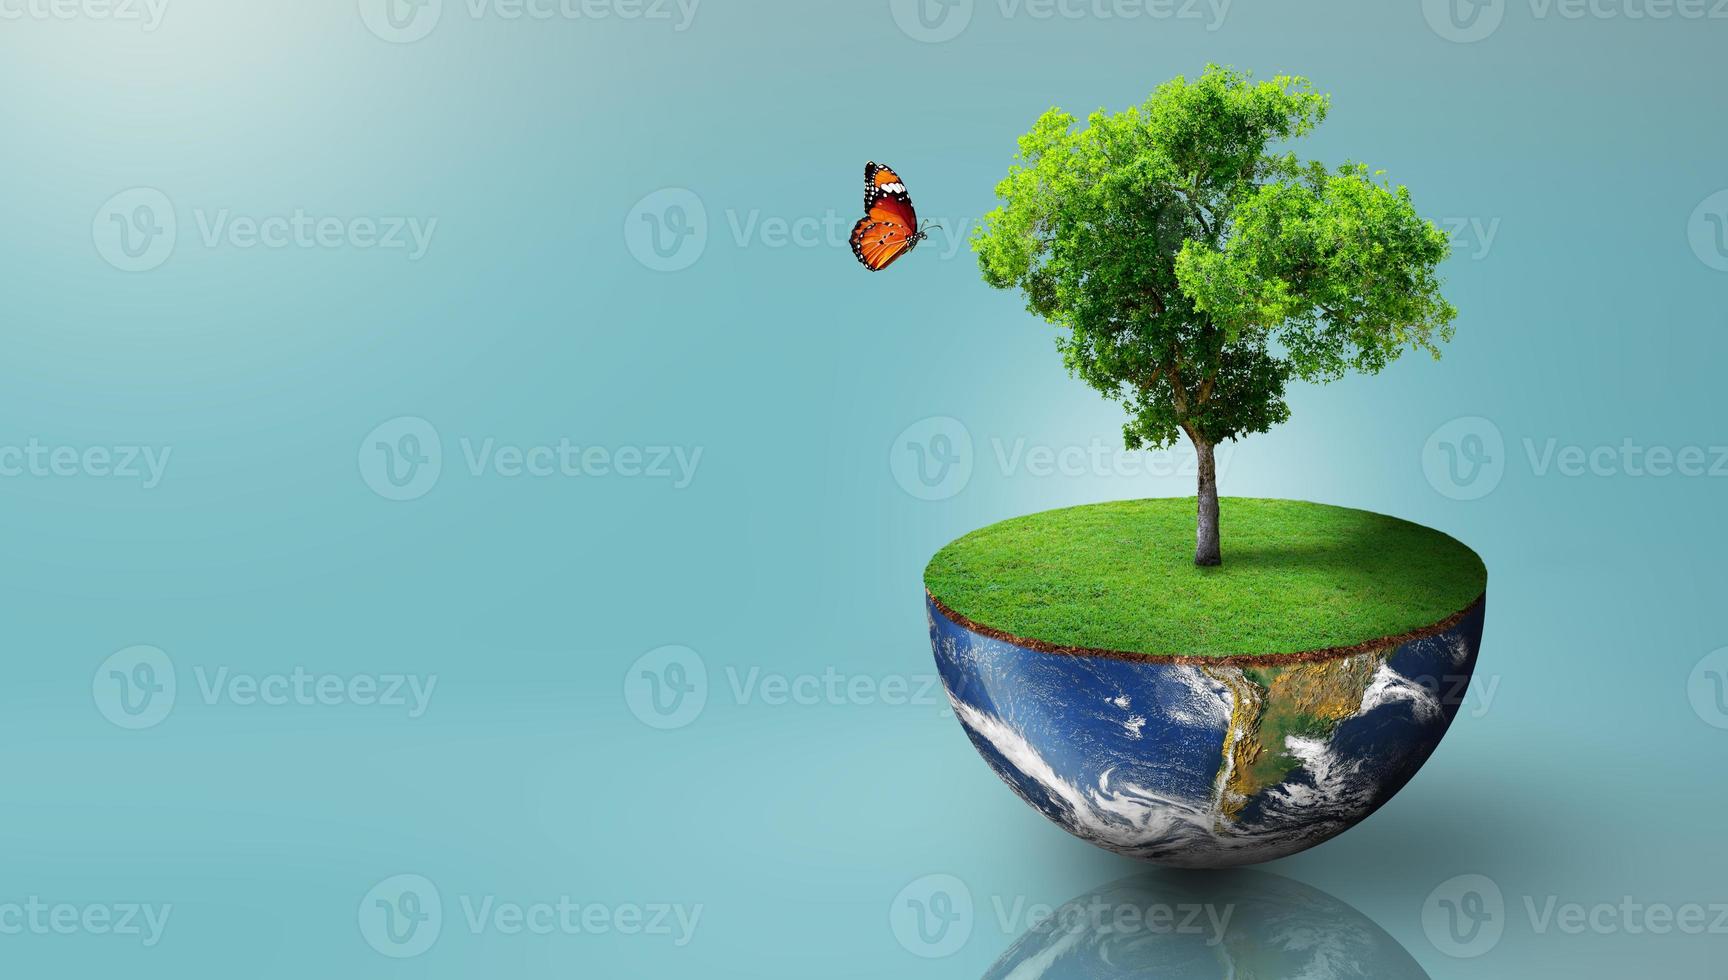 världsekologi, världsmiljödagen, världsjorddagen och räddande miljö. foto